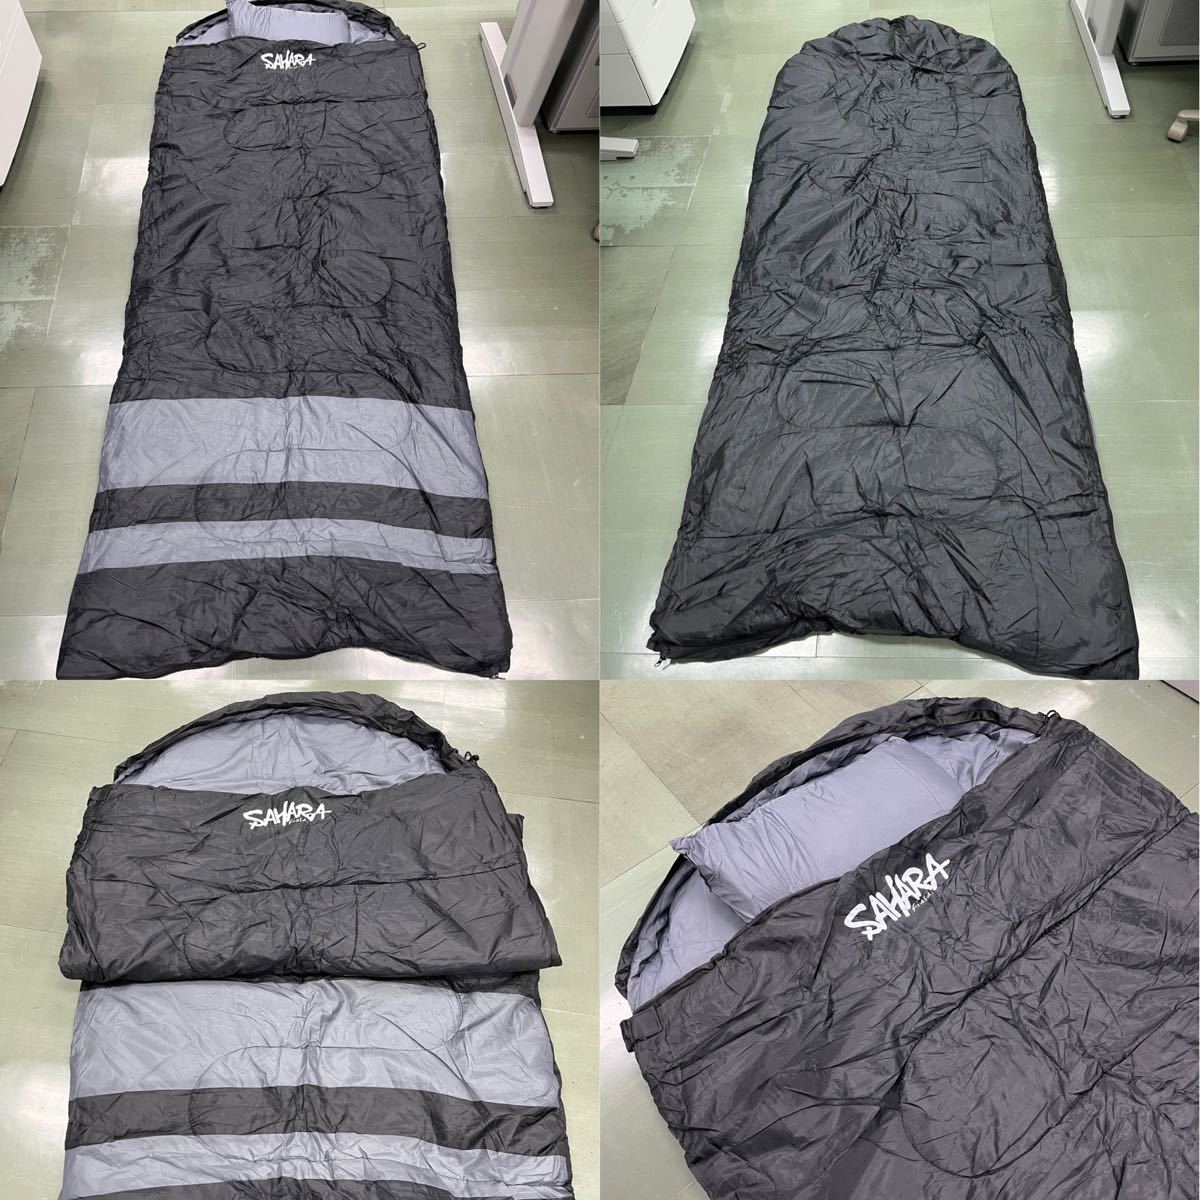 ワイド 大きい 新品 寝袋 枕付き シュラフ 丸洗い 抗菌 ゆったり 高品質 キャンプ 登山 車中泊 封筒型 -15℃ 90cm